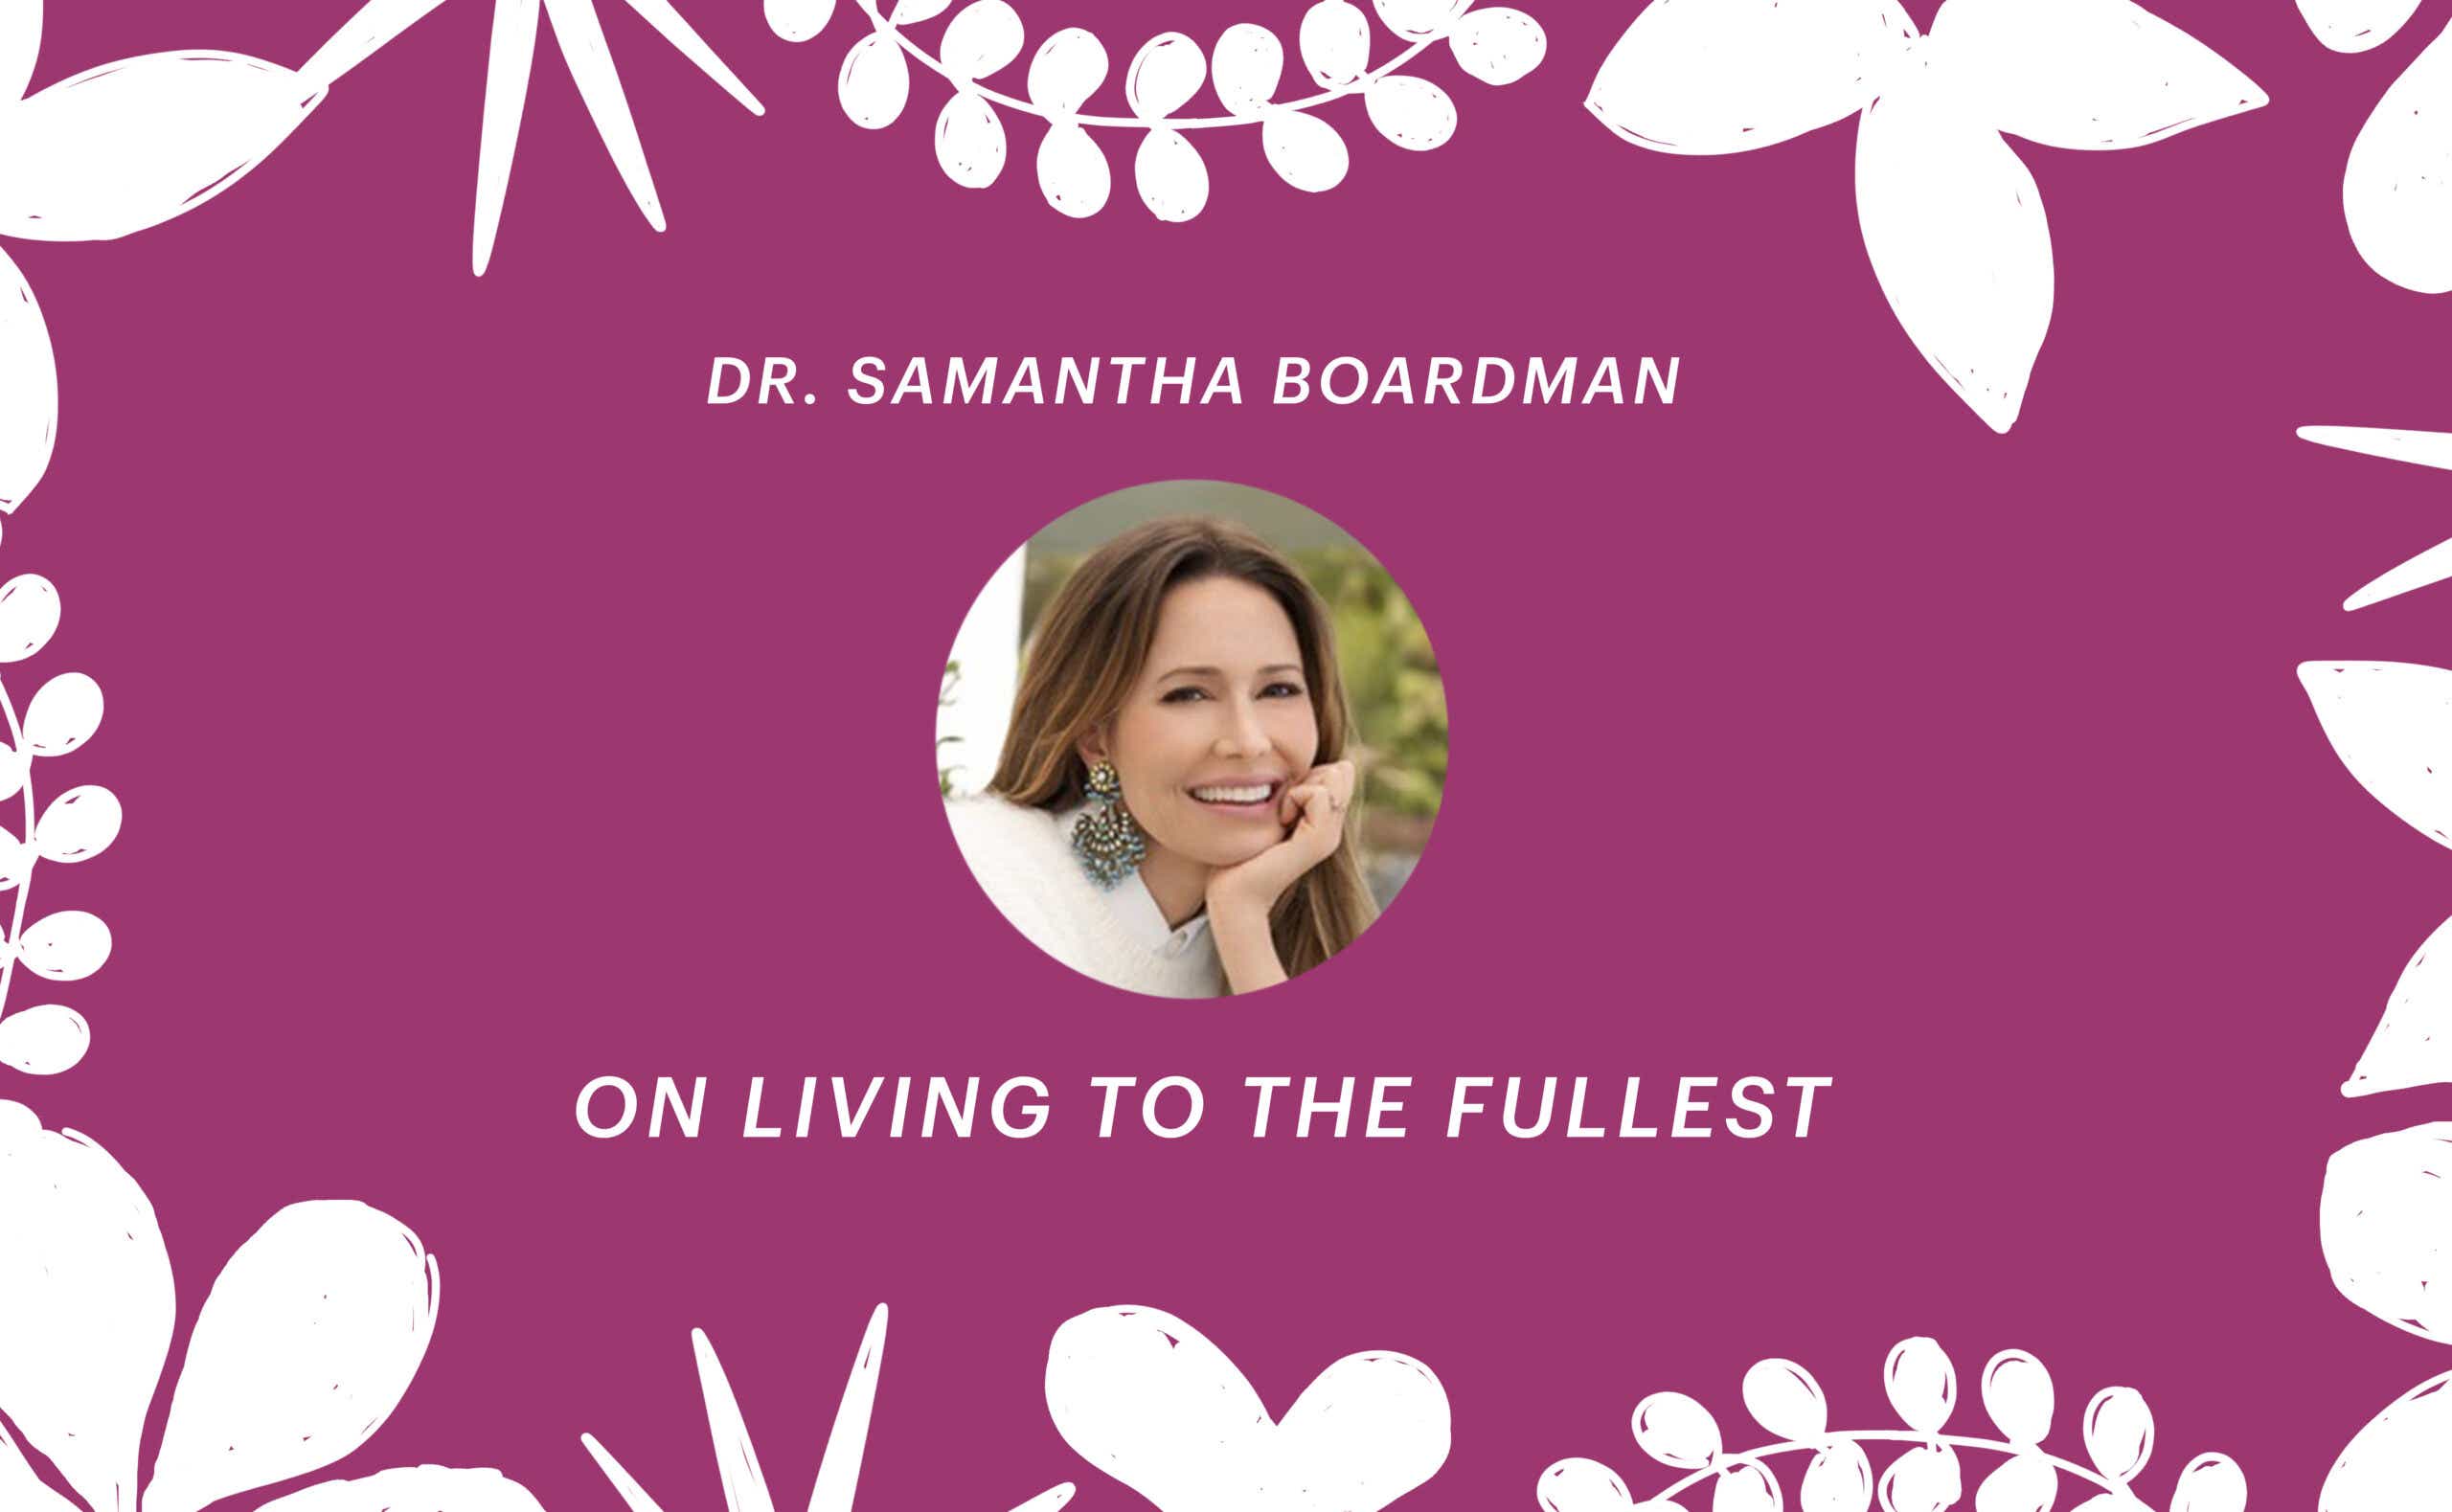 Dr. Samantha Boardman on living to the fullest